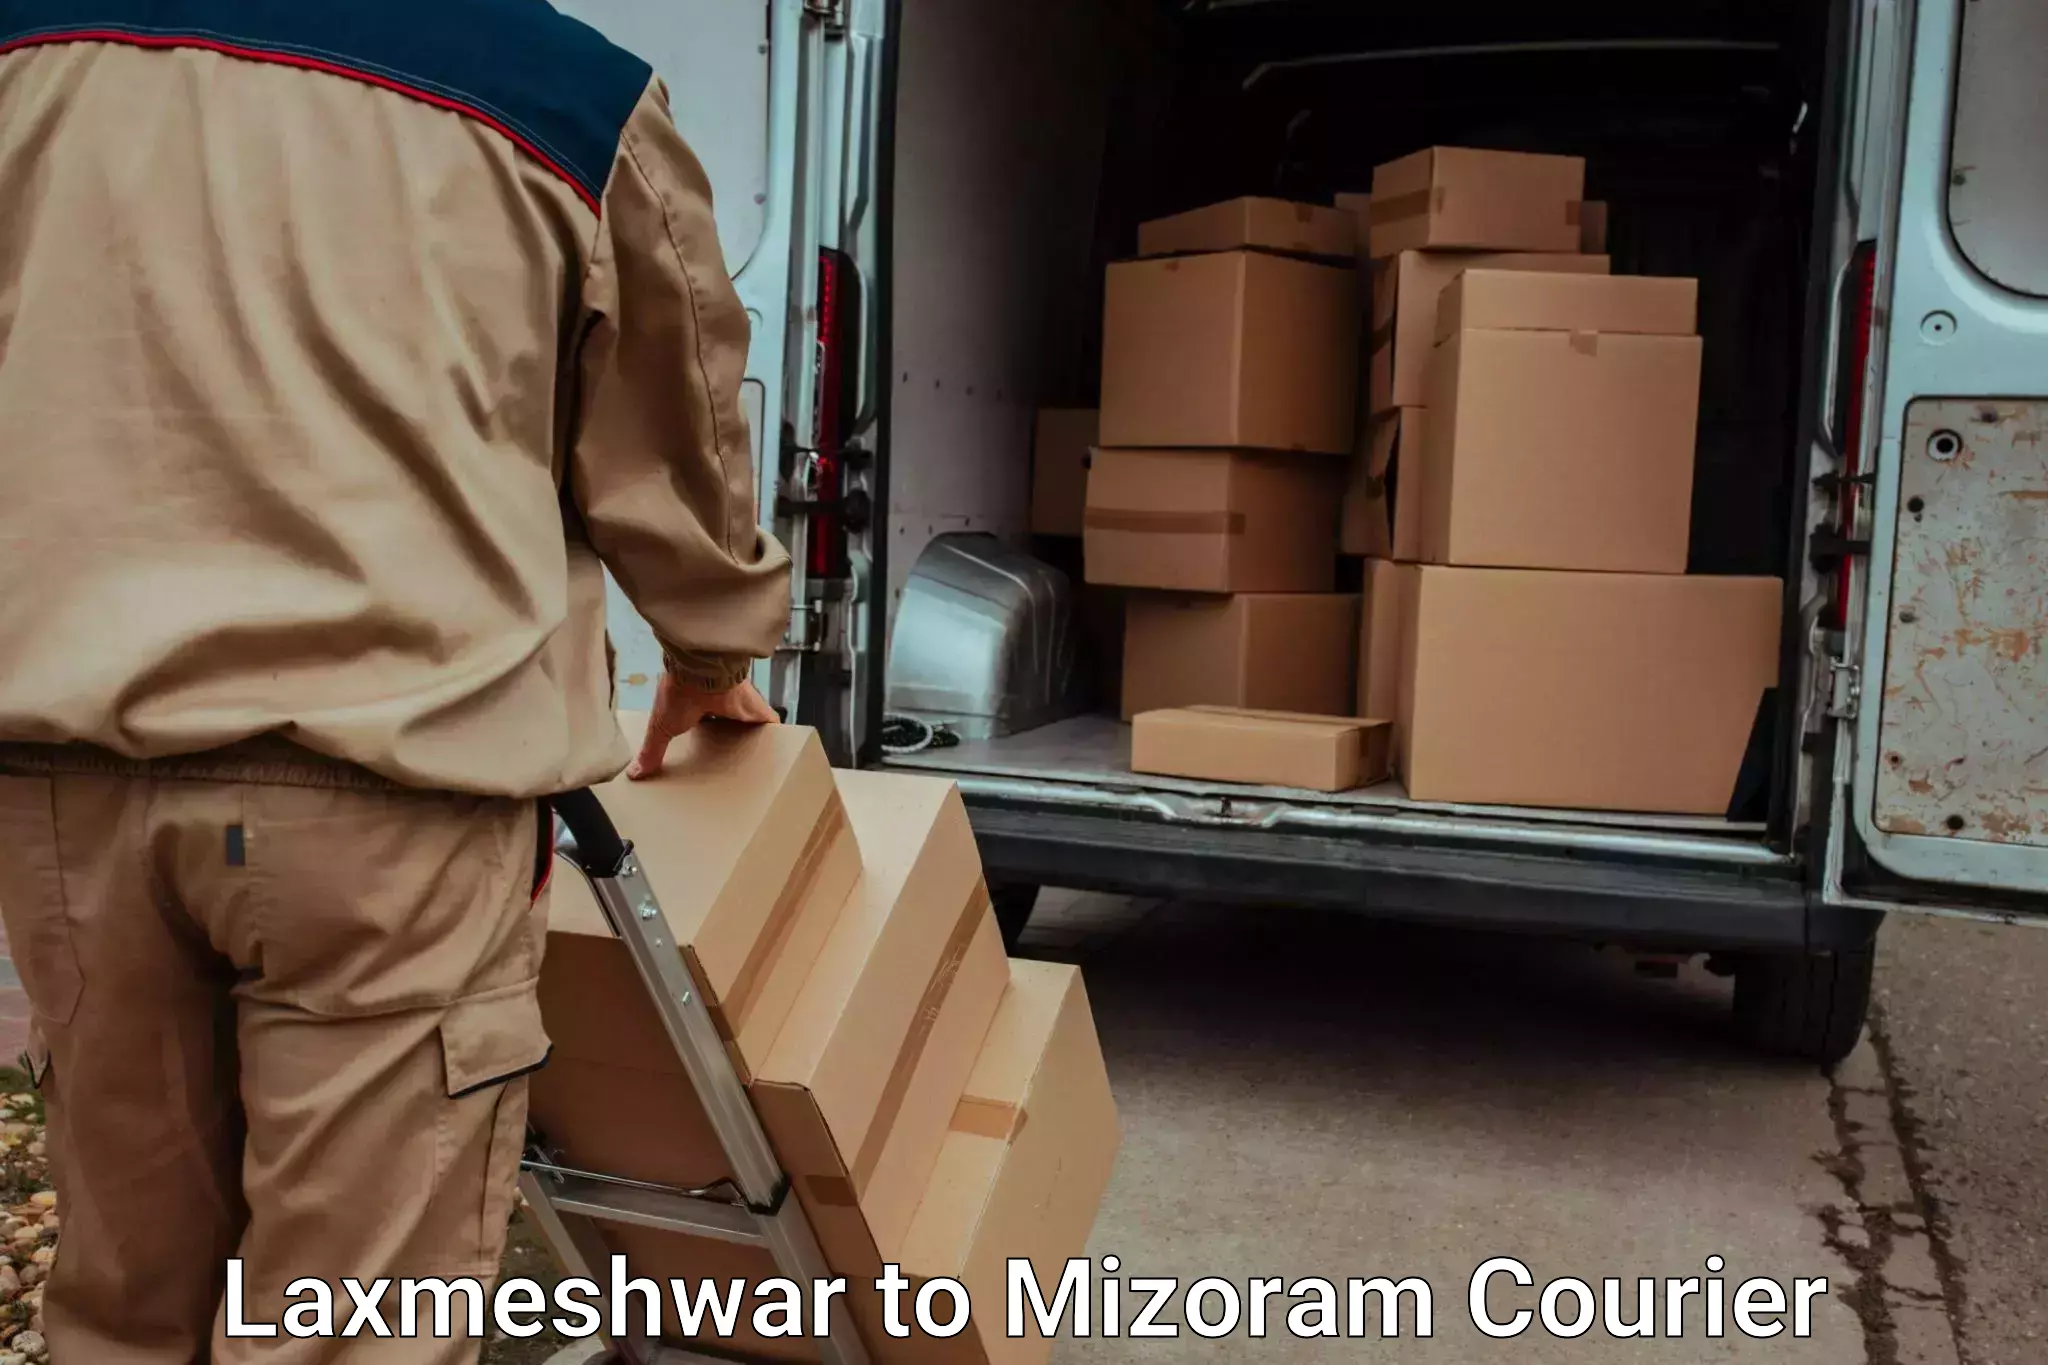 Door-to-door relocation services Laxmeshwar to Aizawl